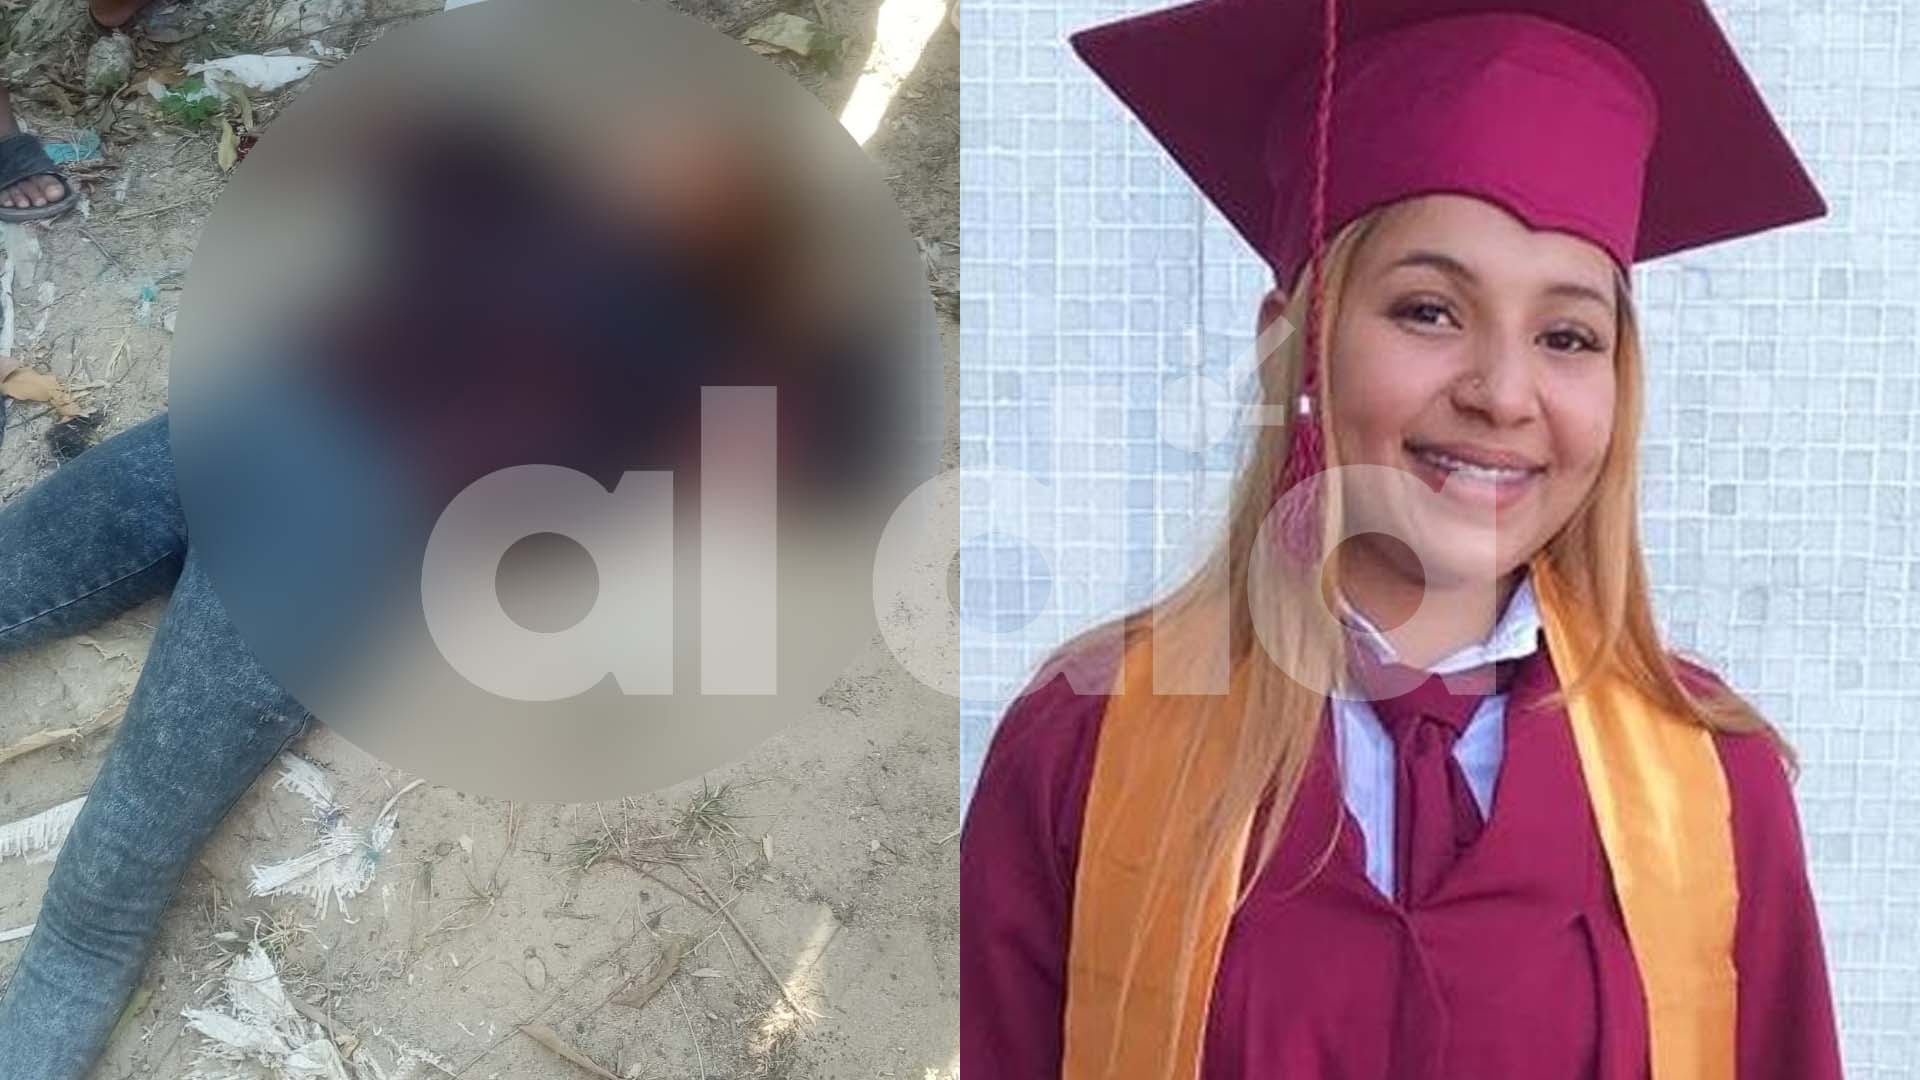 La joven fue identificada como Laura Vanessa Rodríguez, de 21 años de edad